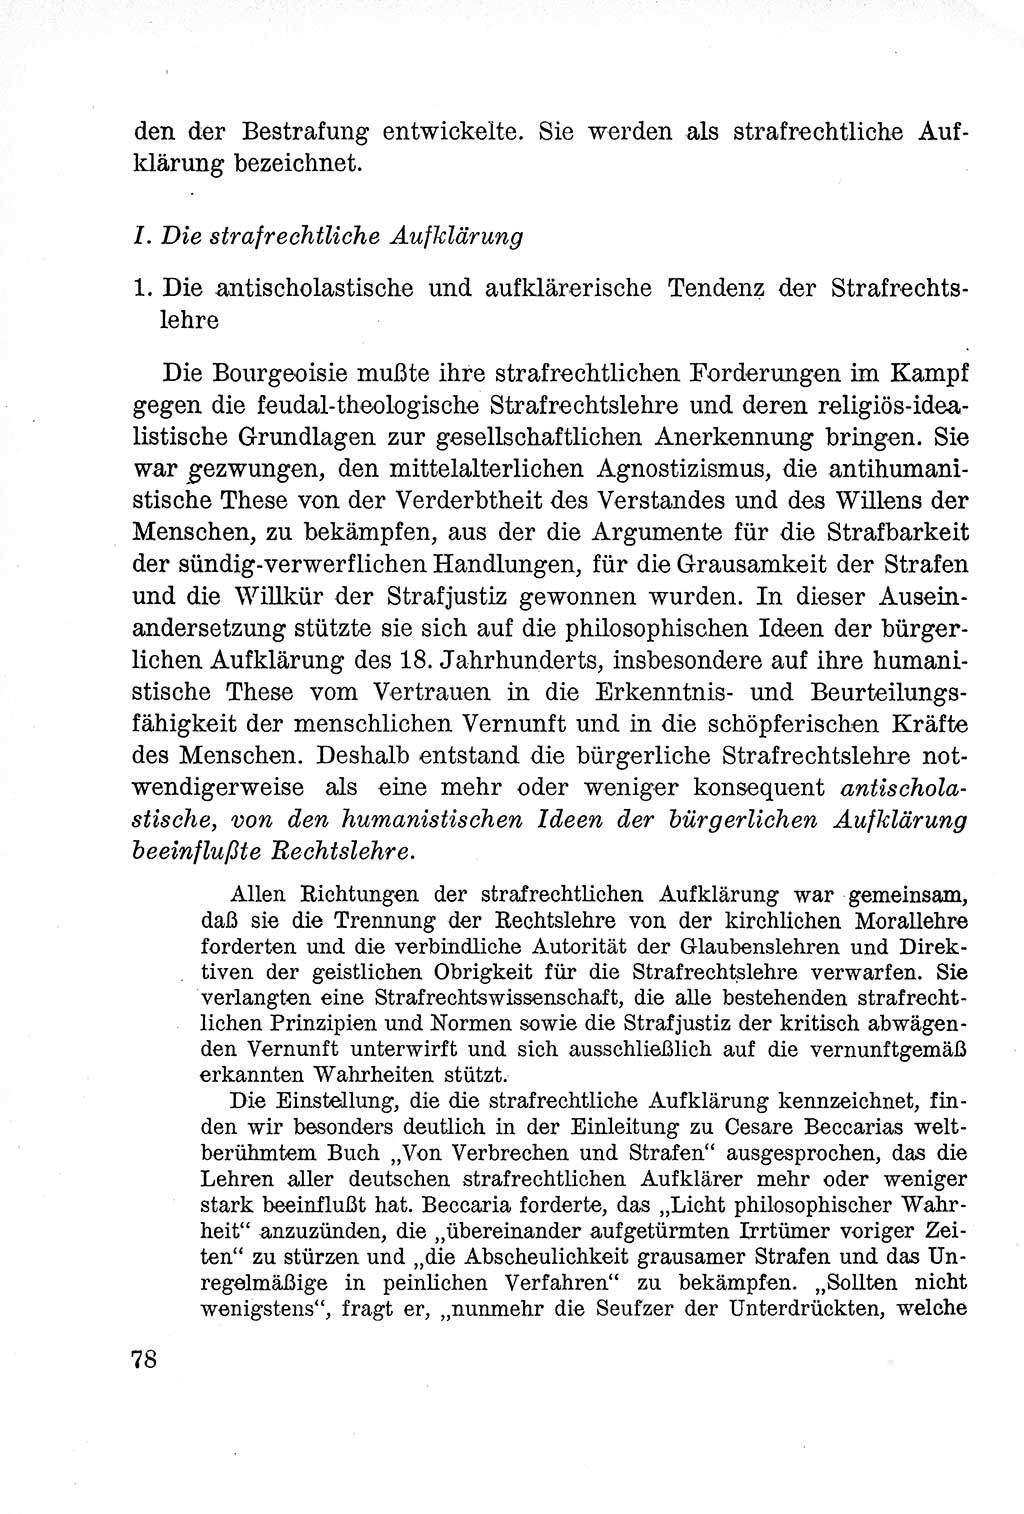 Lehrbuch des Strafrechts der Deutschen Demokratischen Republik (DDR), Allgemeiner Teil 1957, Seite 78 (Lb. Strafr. DDR AT 1957, S. 78)